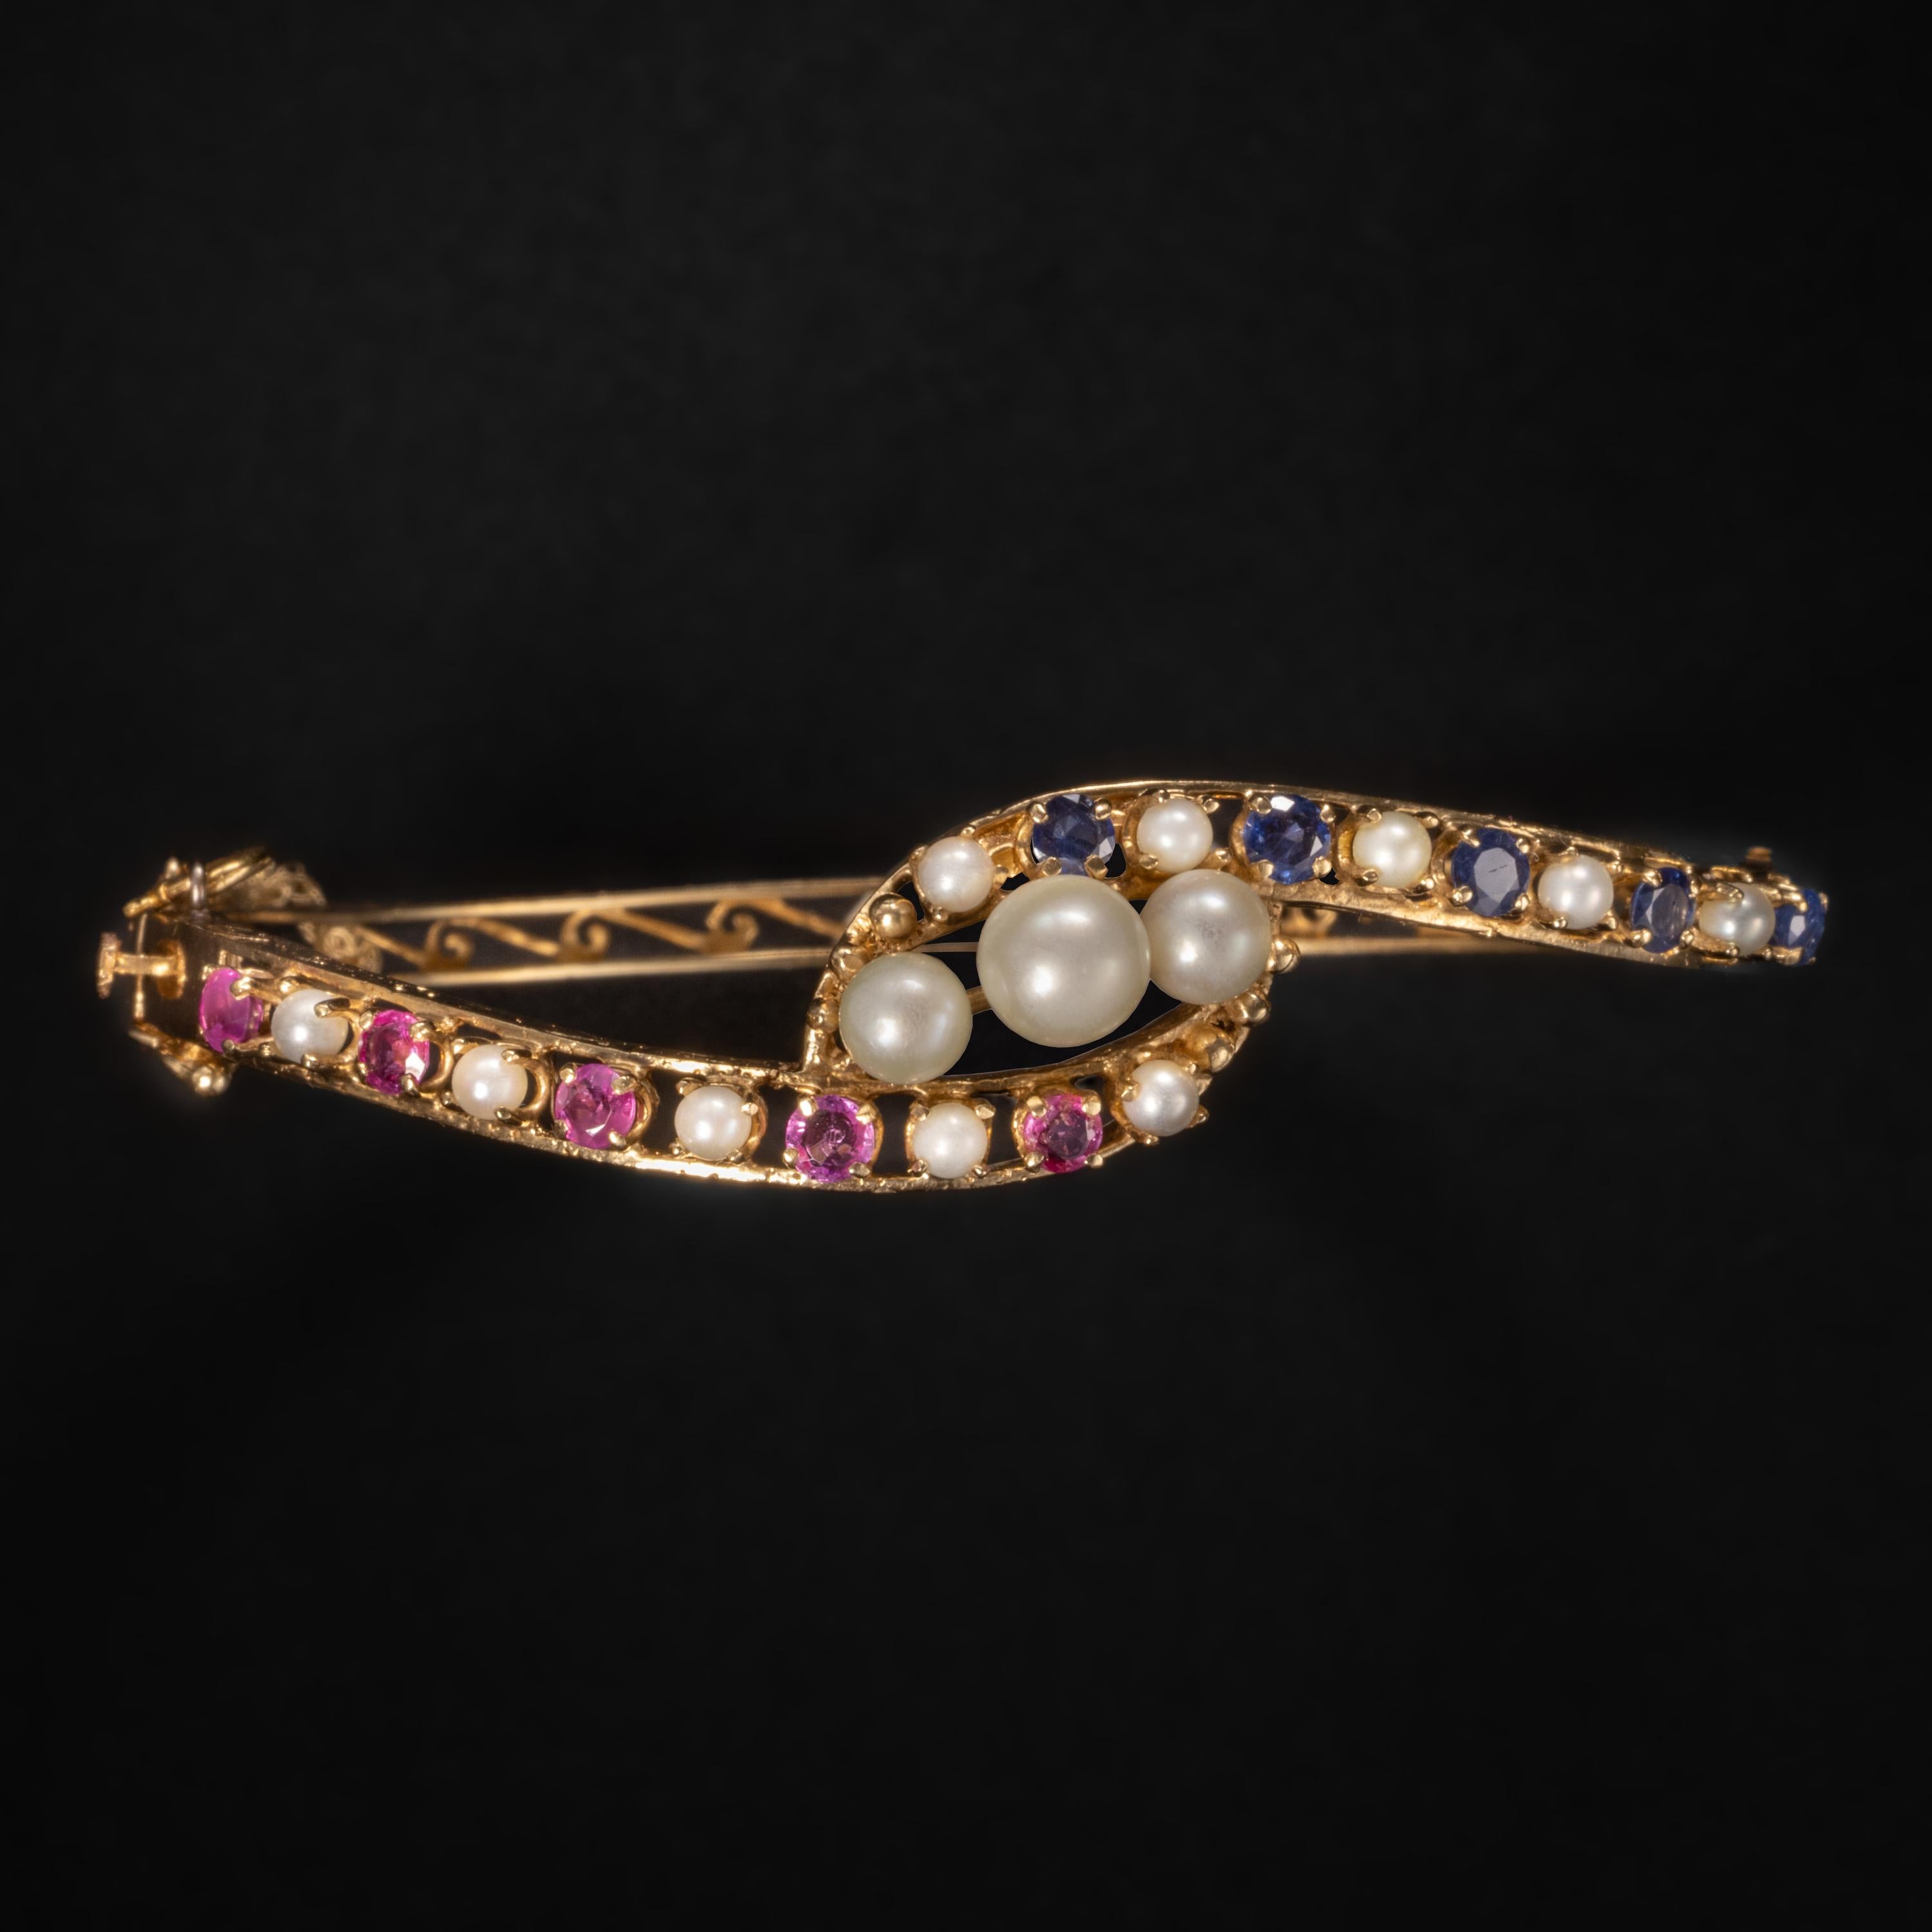 Diese viktorianische Armspange aus rosa und blauem Saphir mit Perlen wurde in den späten 1800er bis frühen 1900er Jahren hergestellt. Er besteht aus 5 natürlichen, erhitzten königsblauen Saphiren und fünf natürlichen, erhitzten rosa Saphiren. Oder